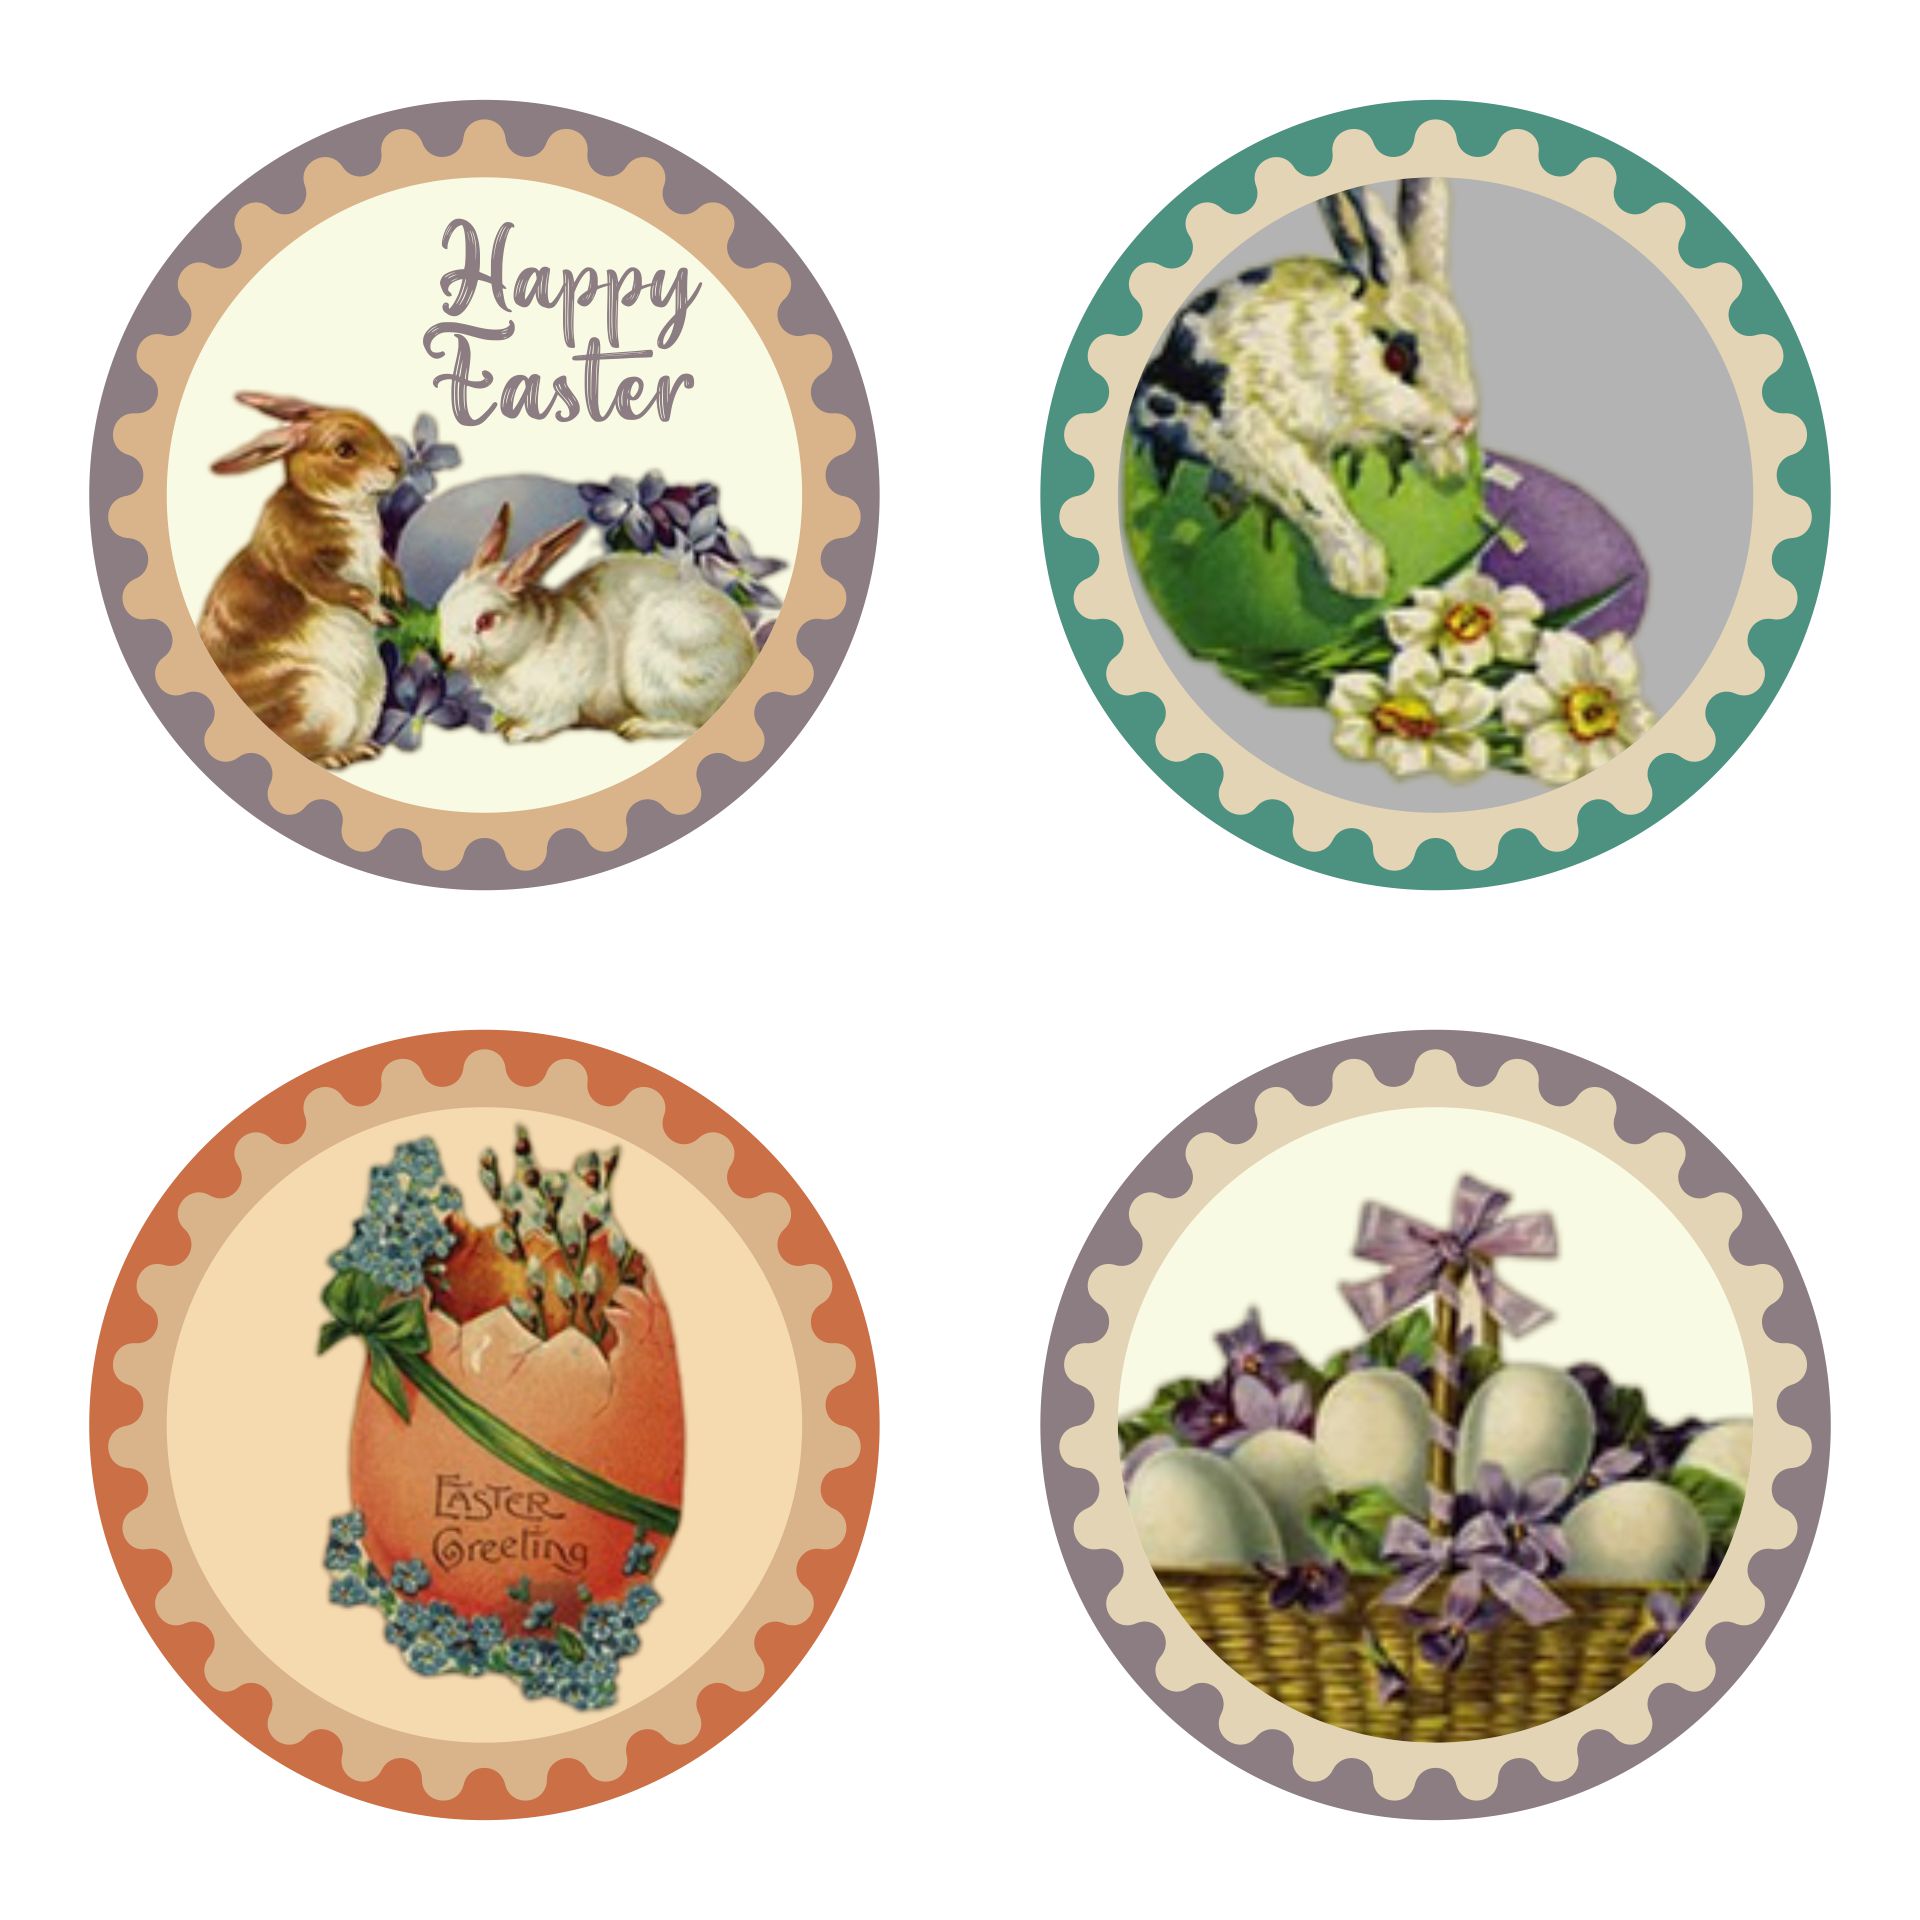 5 Best Images Of Free Printable Vintage Easter Cards Vintage Easter 